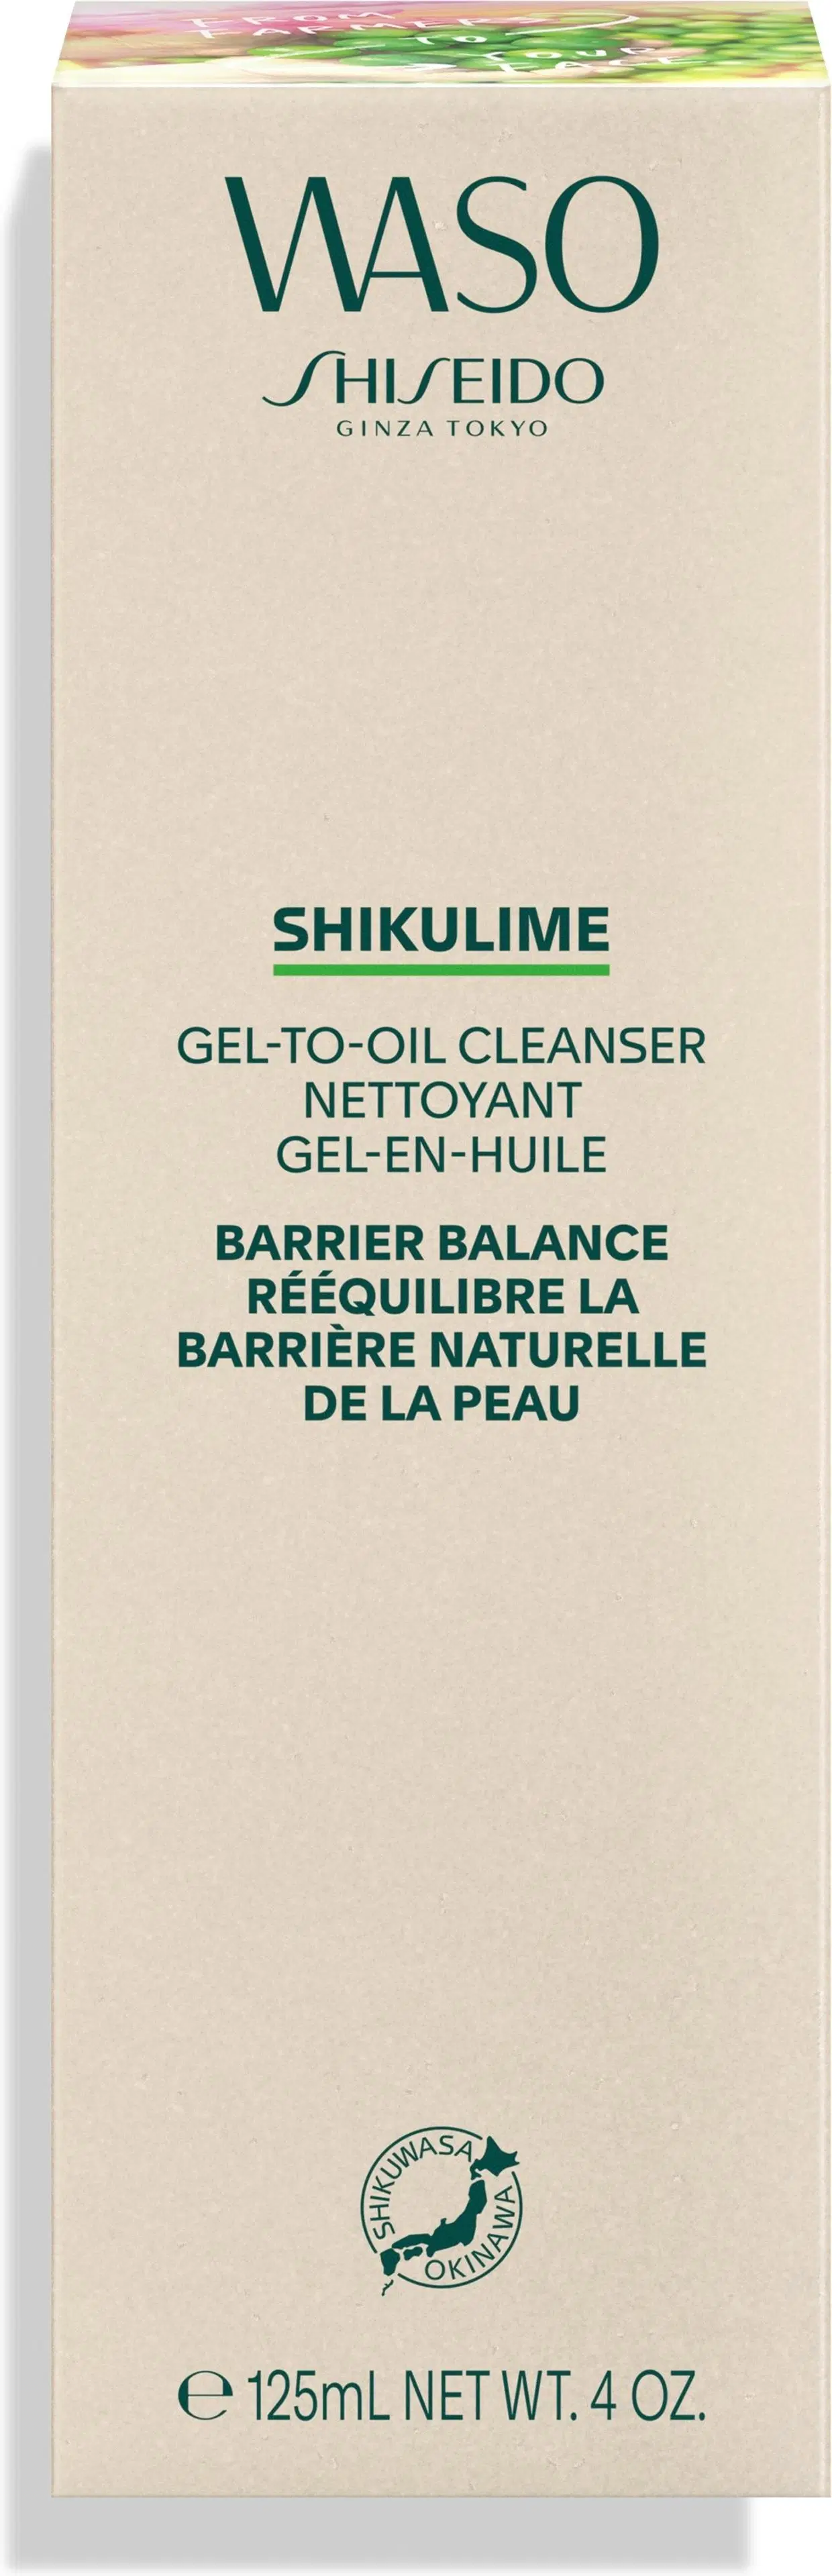 Shiseido WASO Shikulime puhdistusgeeli 125 ml